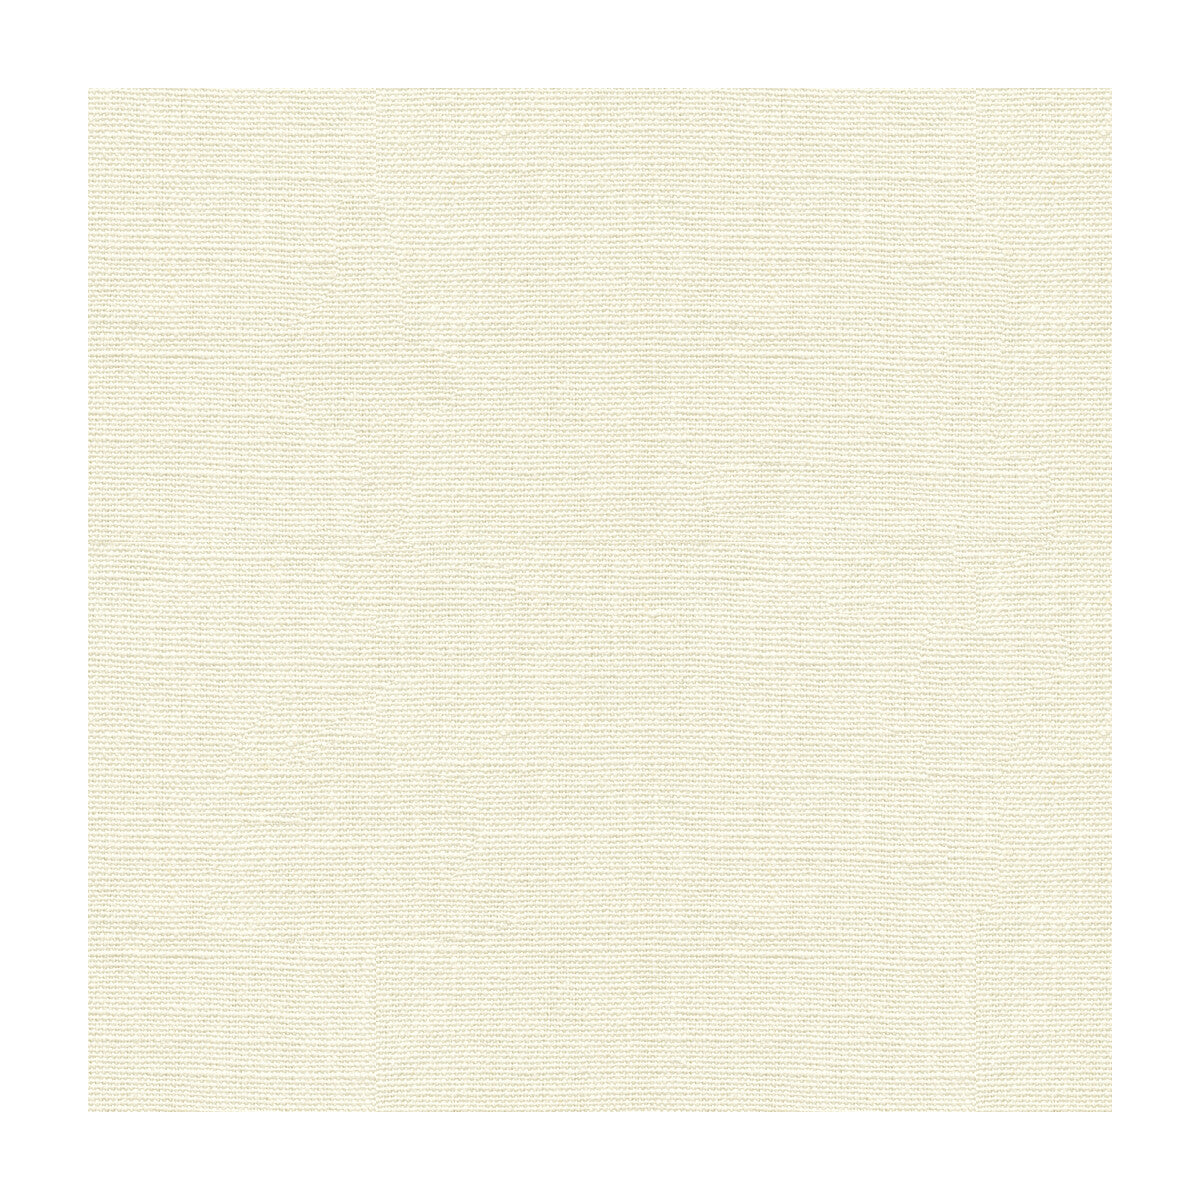 Kravet Basics fabric in 33771-101 color - pattern 33771.101.0 - by Kravet Basics